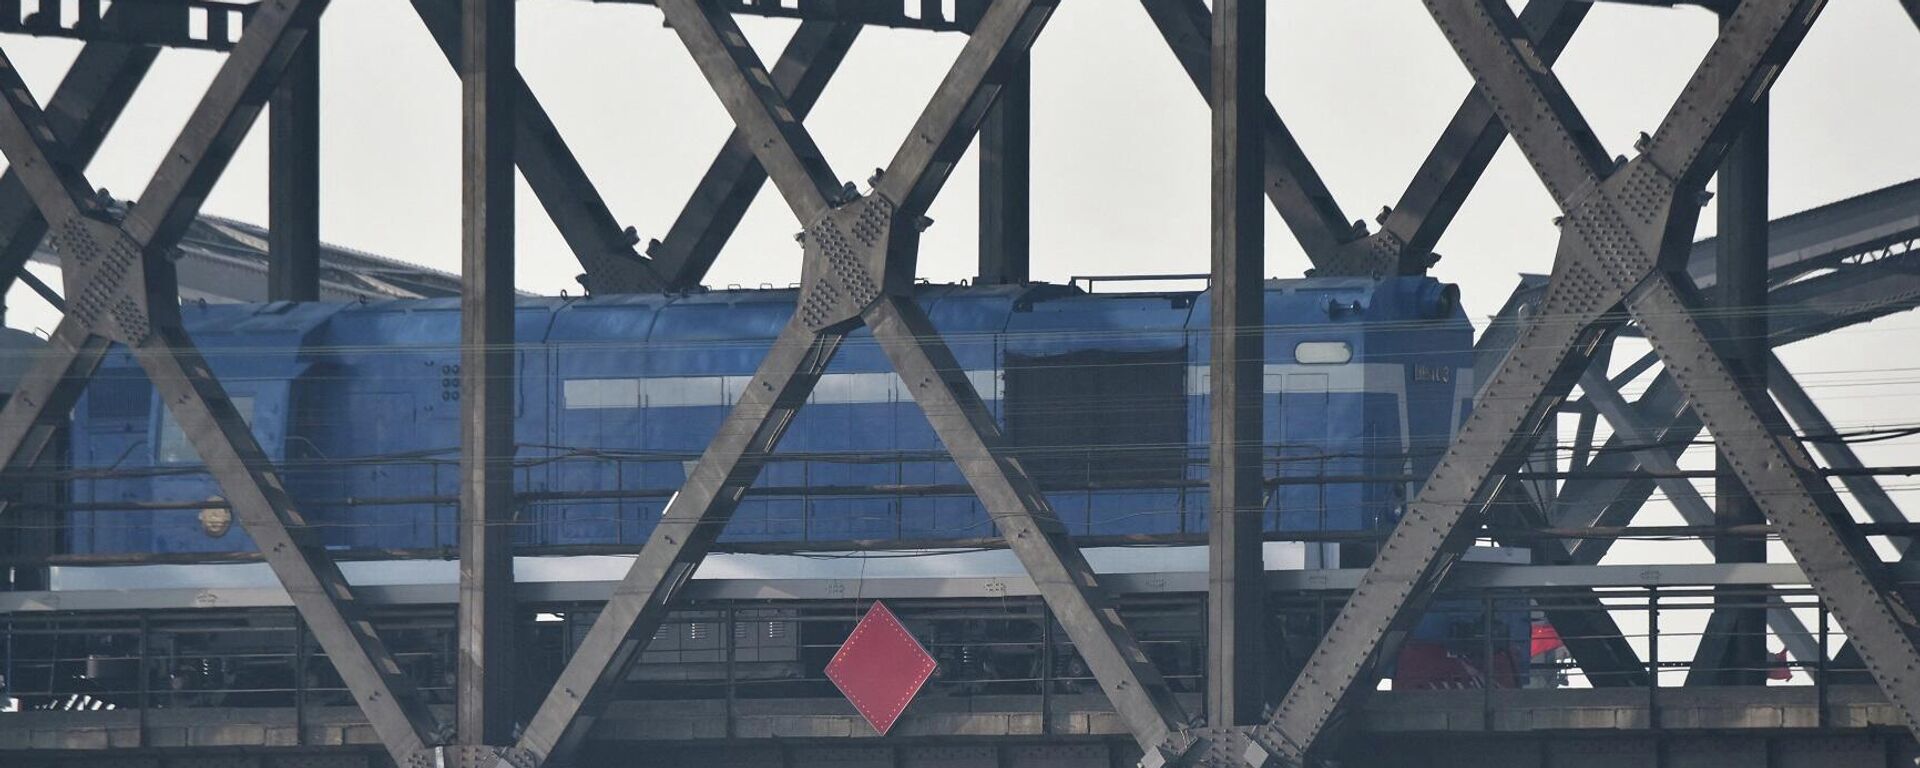 قطار يعبر جسر الصداقة، الذي يمتد على نهر يالو بين الصين وكوريا الشمالية، في مدينة داندونغ الصينية الحدودية، في مقاطعة لياونينغ شمال شرق الصين، 22 فبراير/ شباط 2019 - سبوتنيك عربي, 1920, 26.08.2023